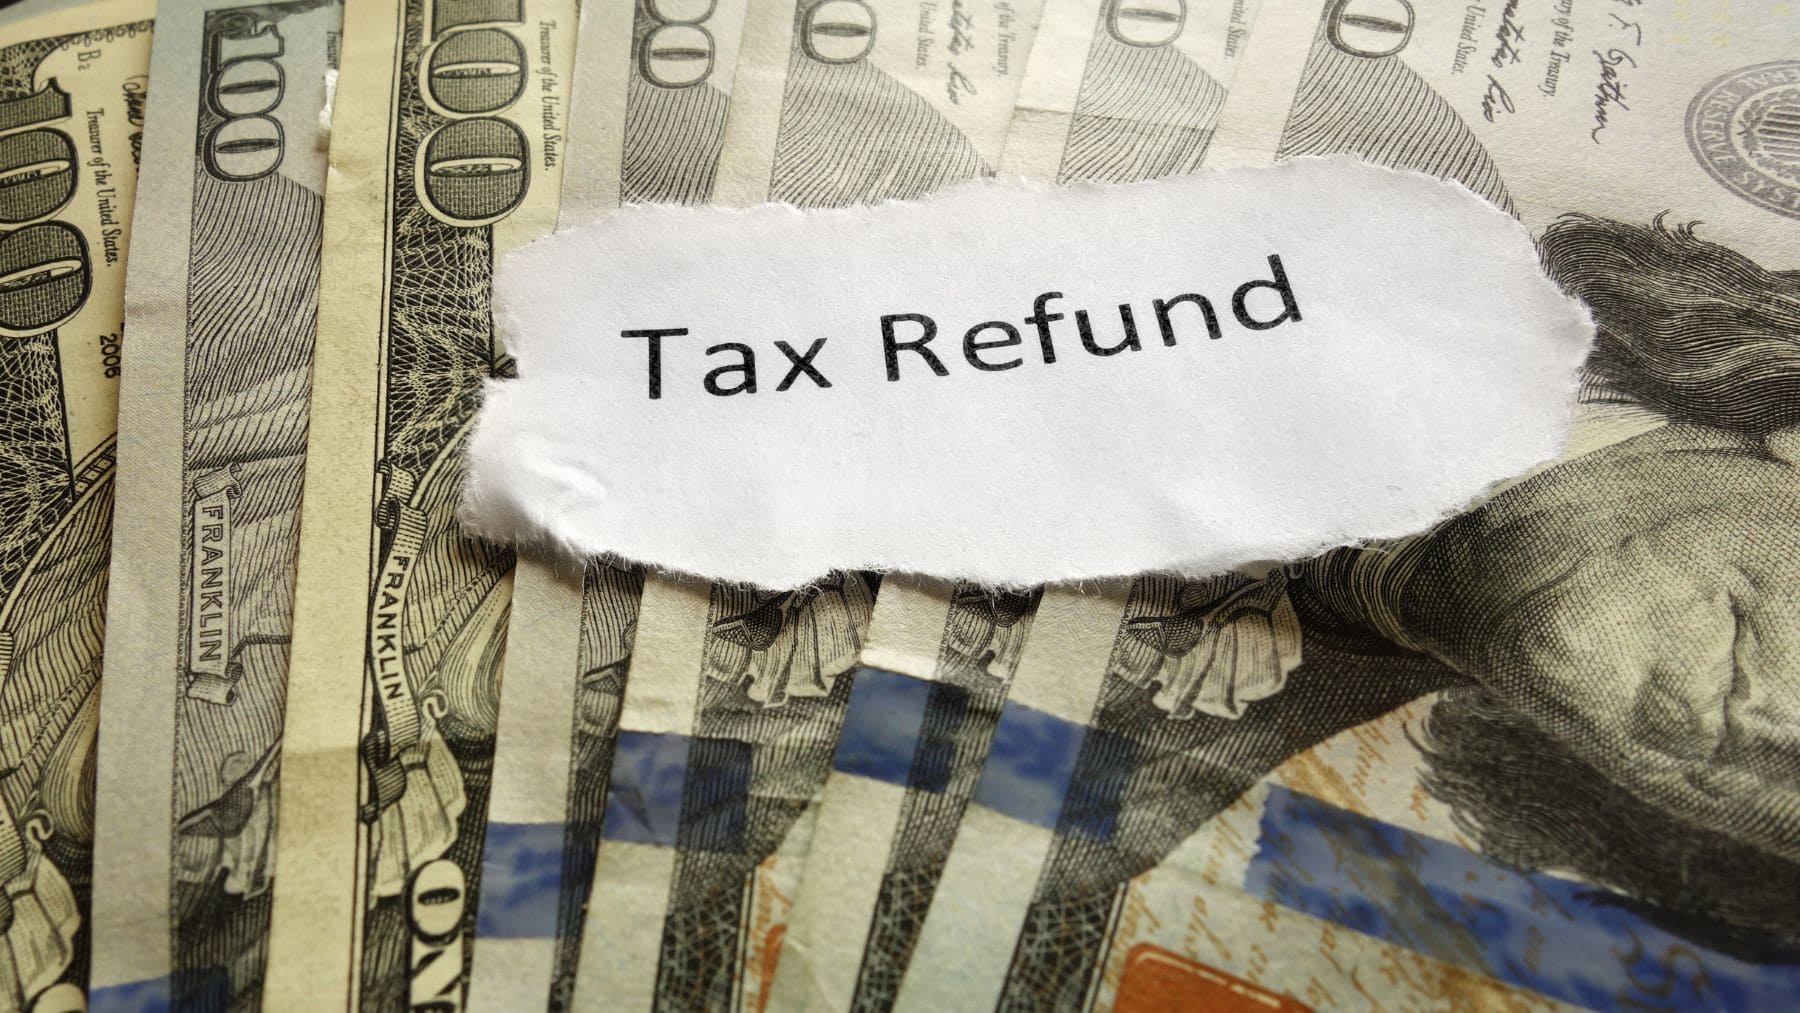 Tax Refund money